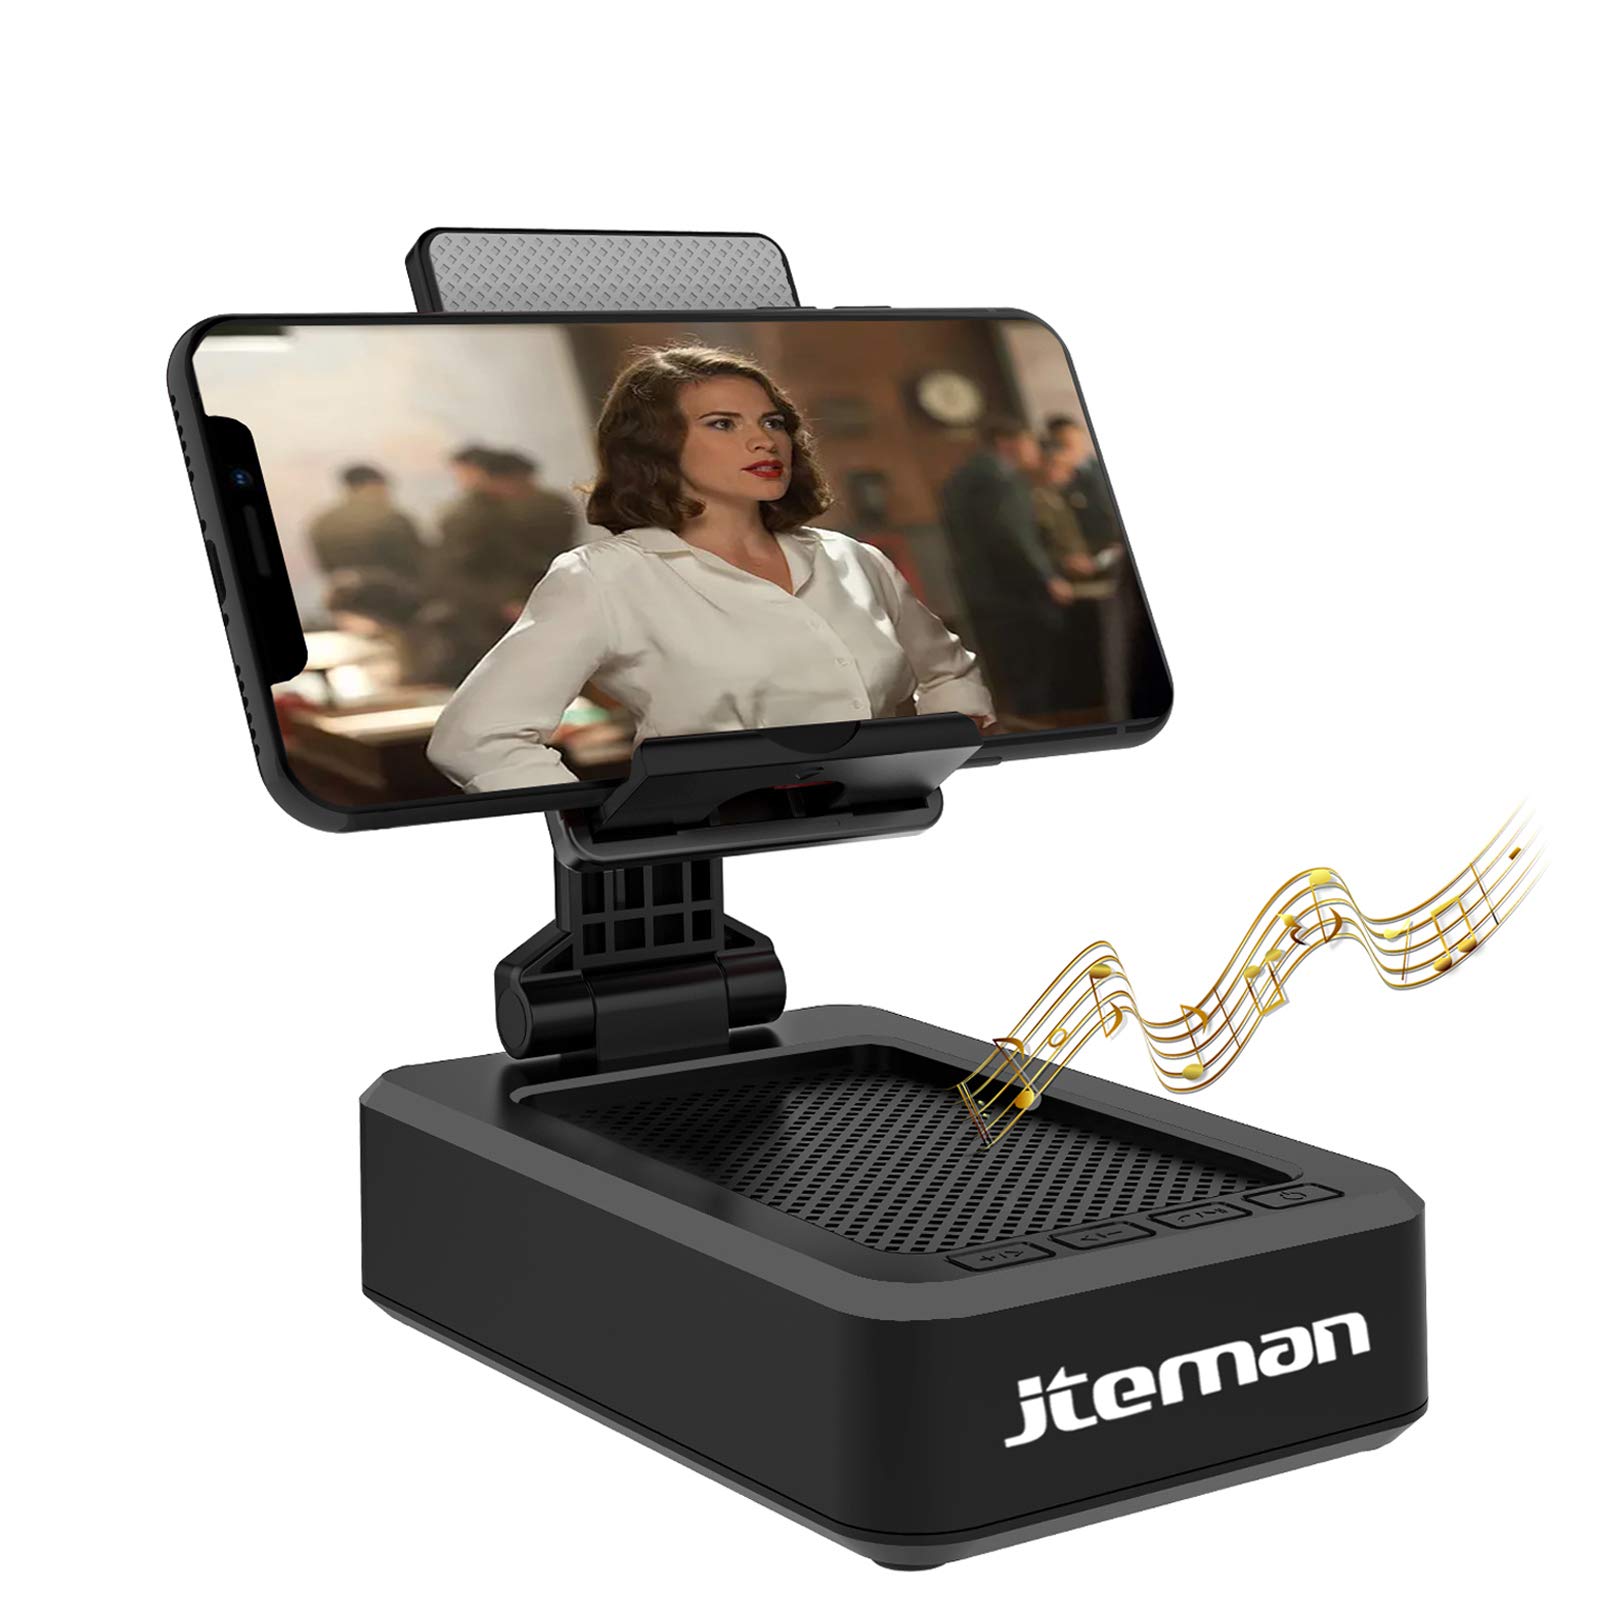 JTEMAN 携帯電話スタンド ワイヤレス Bluetooth スピーカーと滑り止めベース付き HD サラウン...